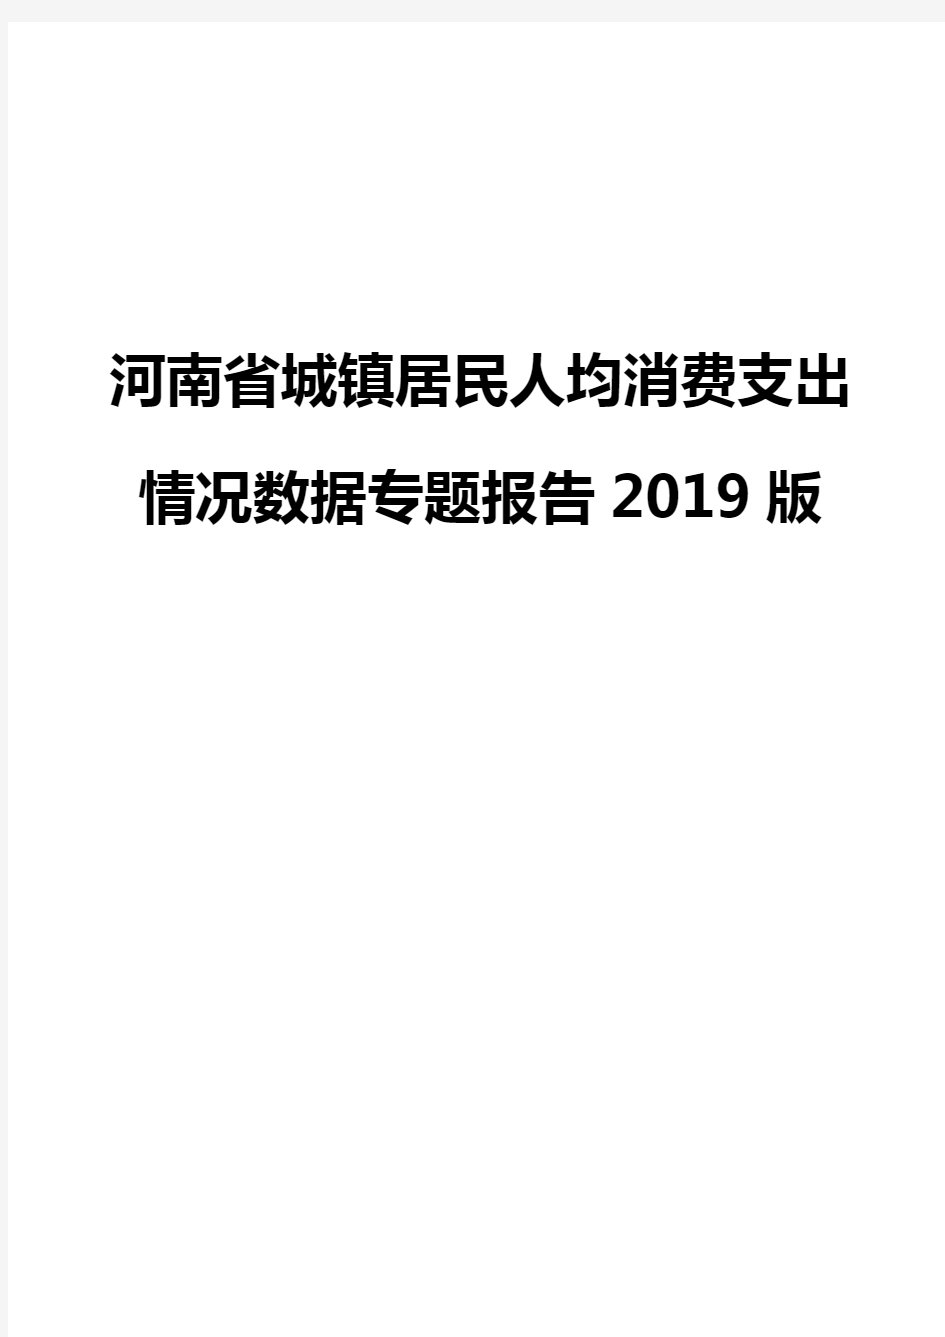 河南省城镇居民人均消费支出情况数据专题报告2019版